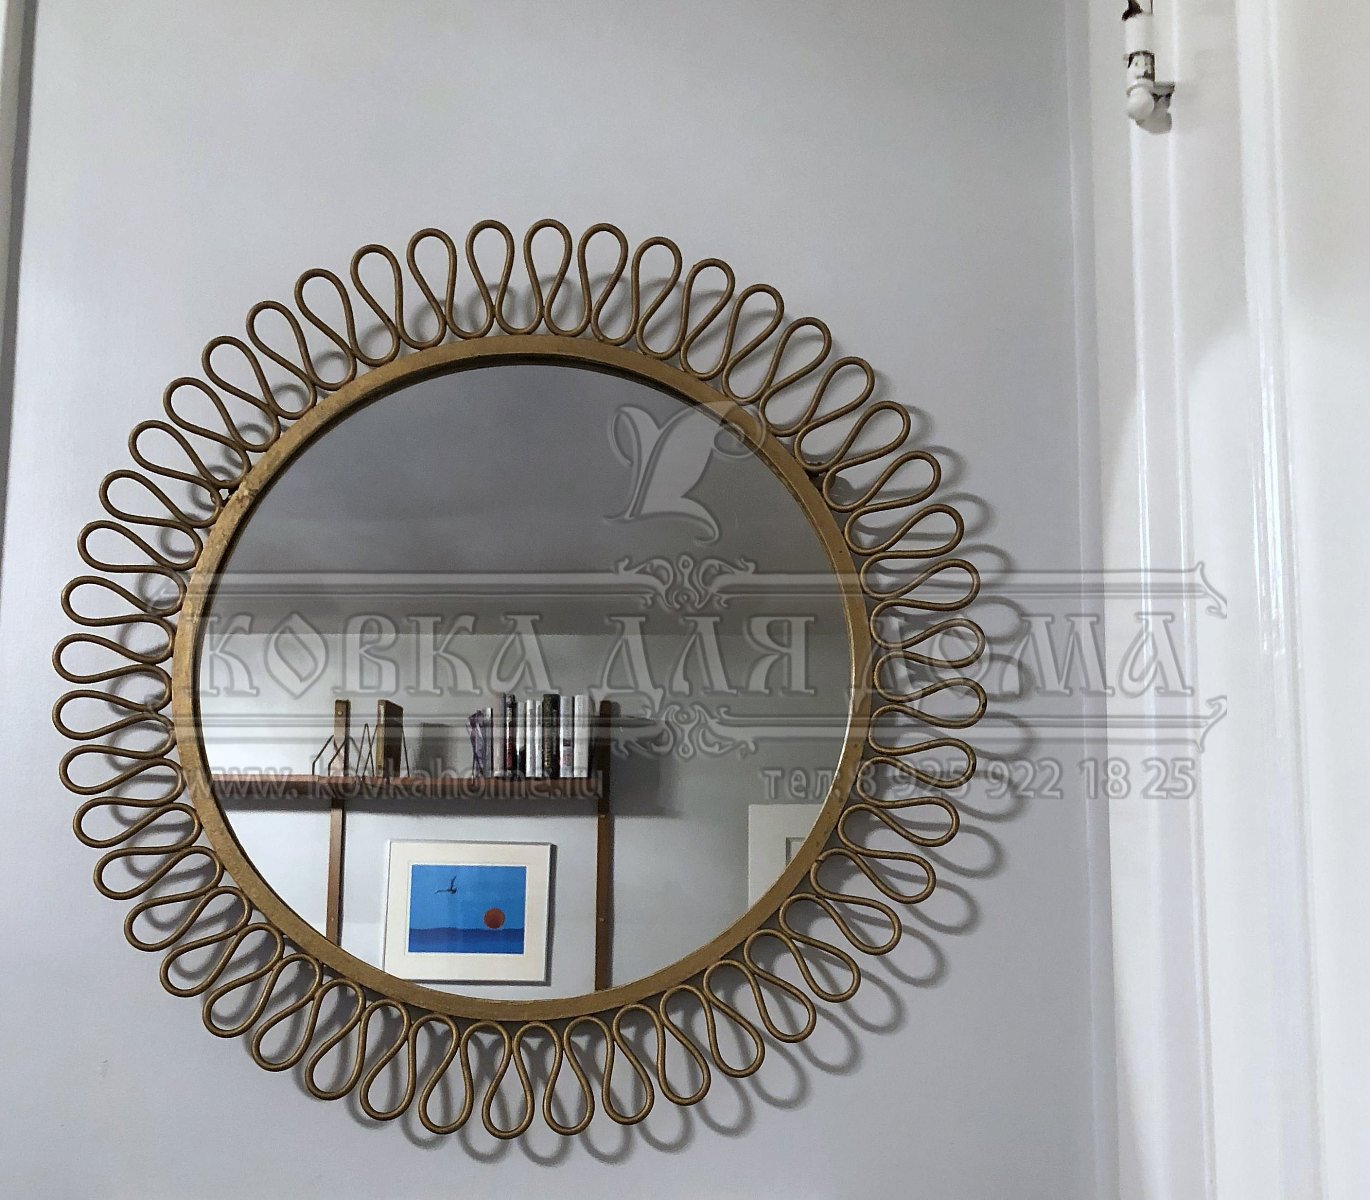 Зеркало в стиле модерн в декоративной стальной круглой кованой золотой раме, настенное ручной работы. Размер габаритный D=500мм.